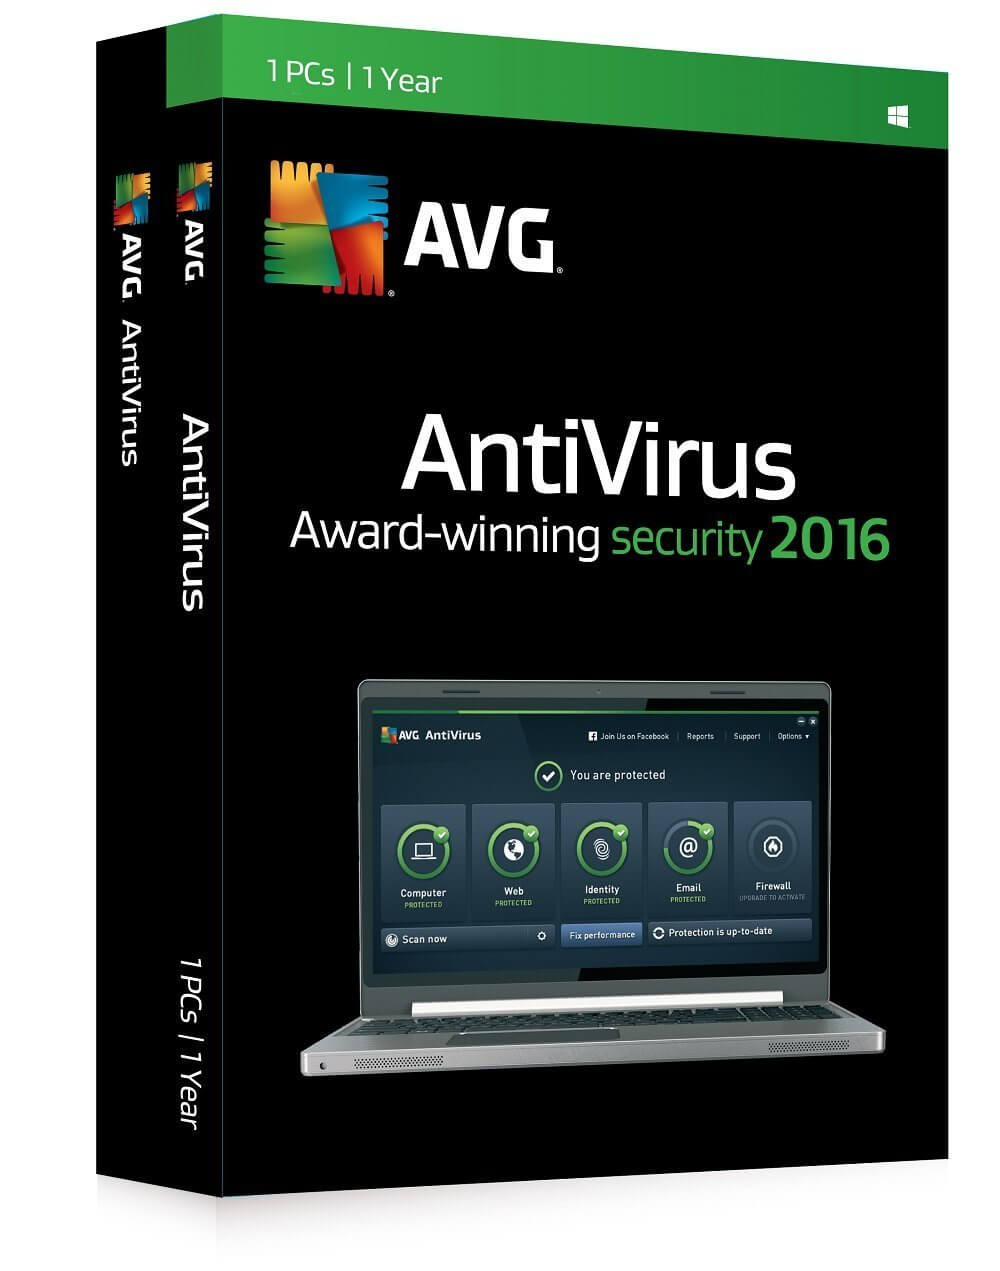 Free Avg Antivirus Software For Mac